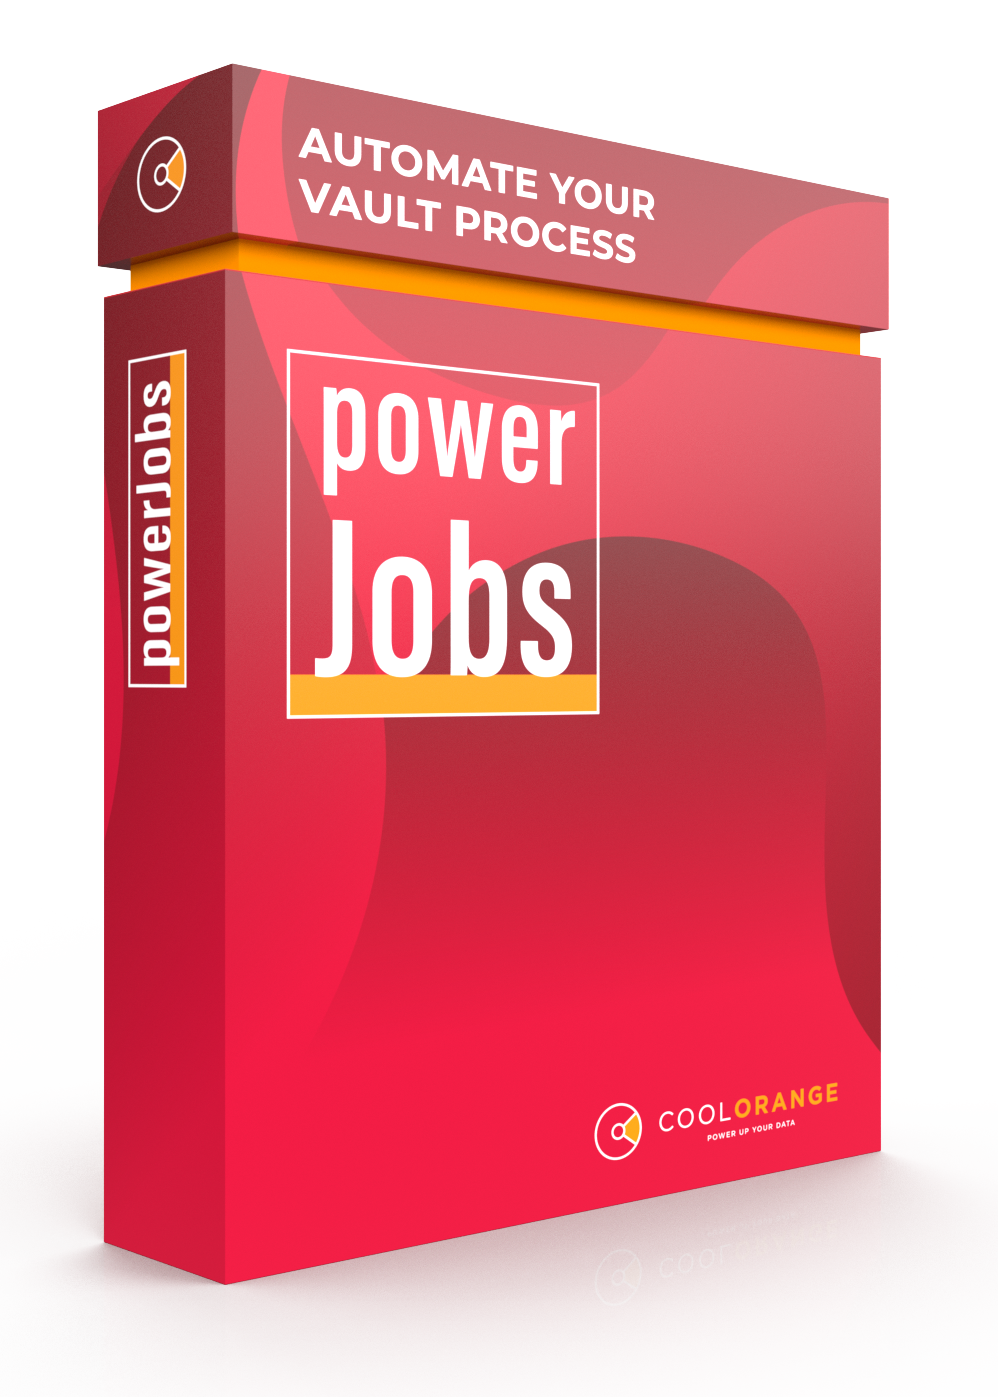 powerjobs automatiza los trabajos en autodesk vault